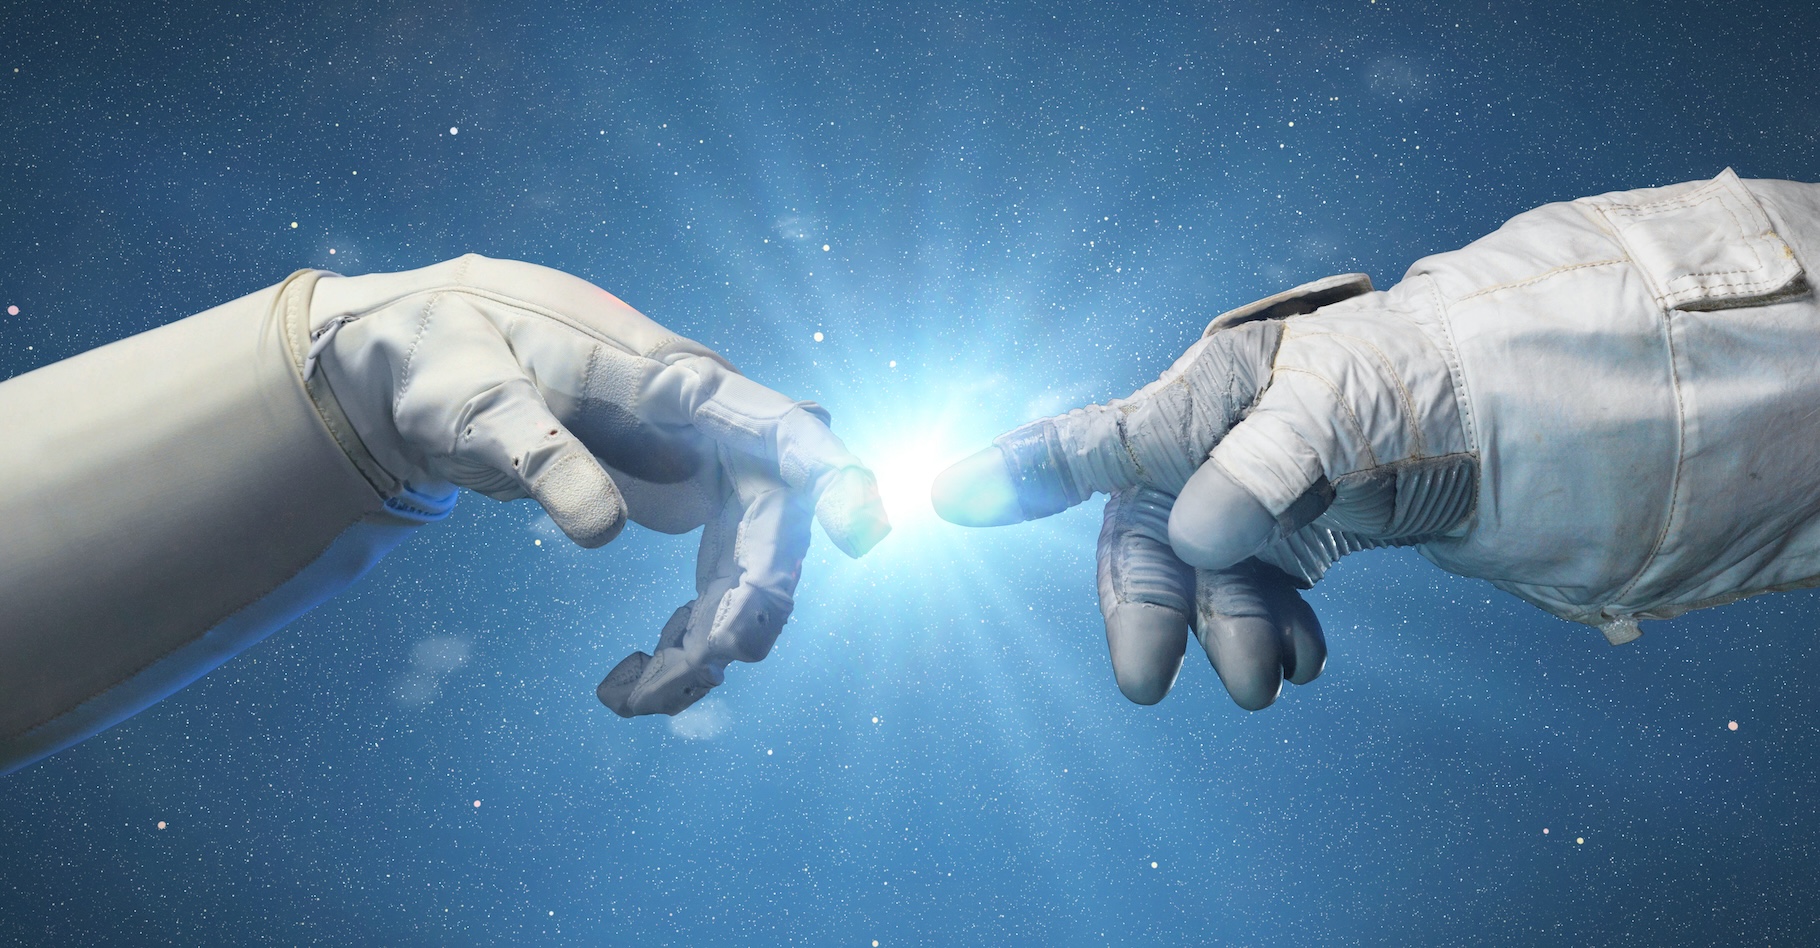 Les gants que portent les astronautes lors des sorties dans l’espace semblent être à l’origine d’une chute de leurs ongles. © dottedyeti, Adobe Stock